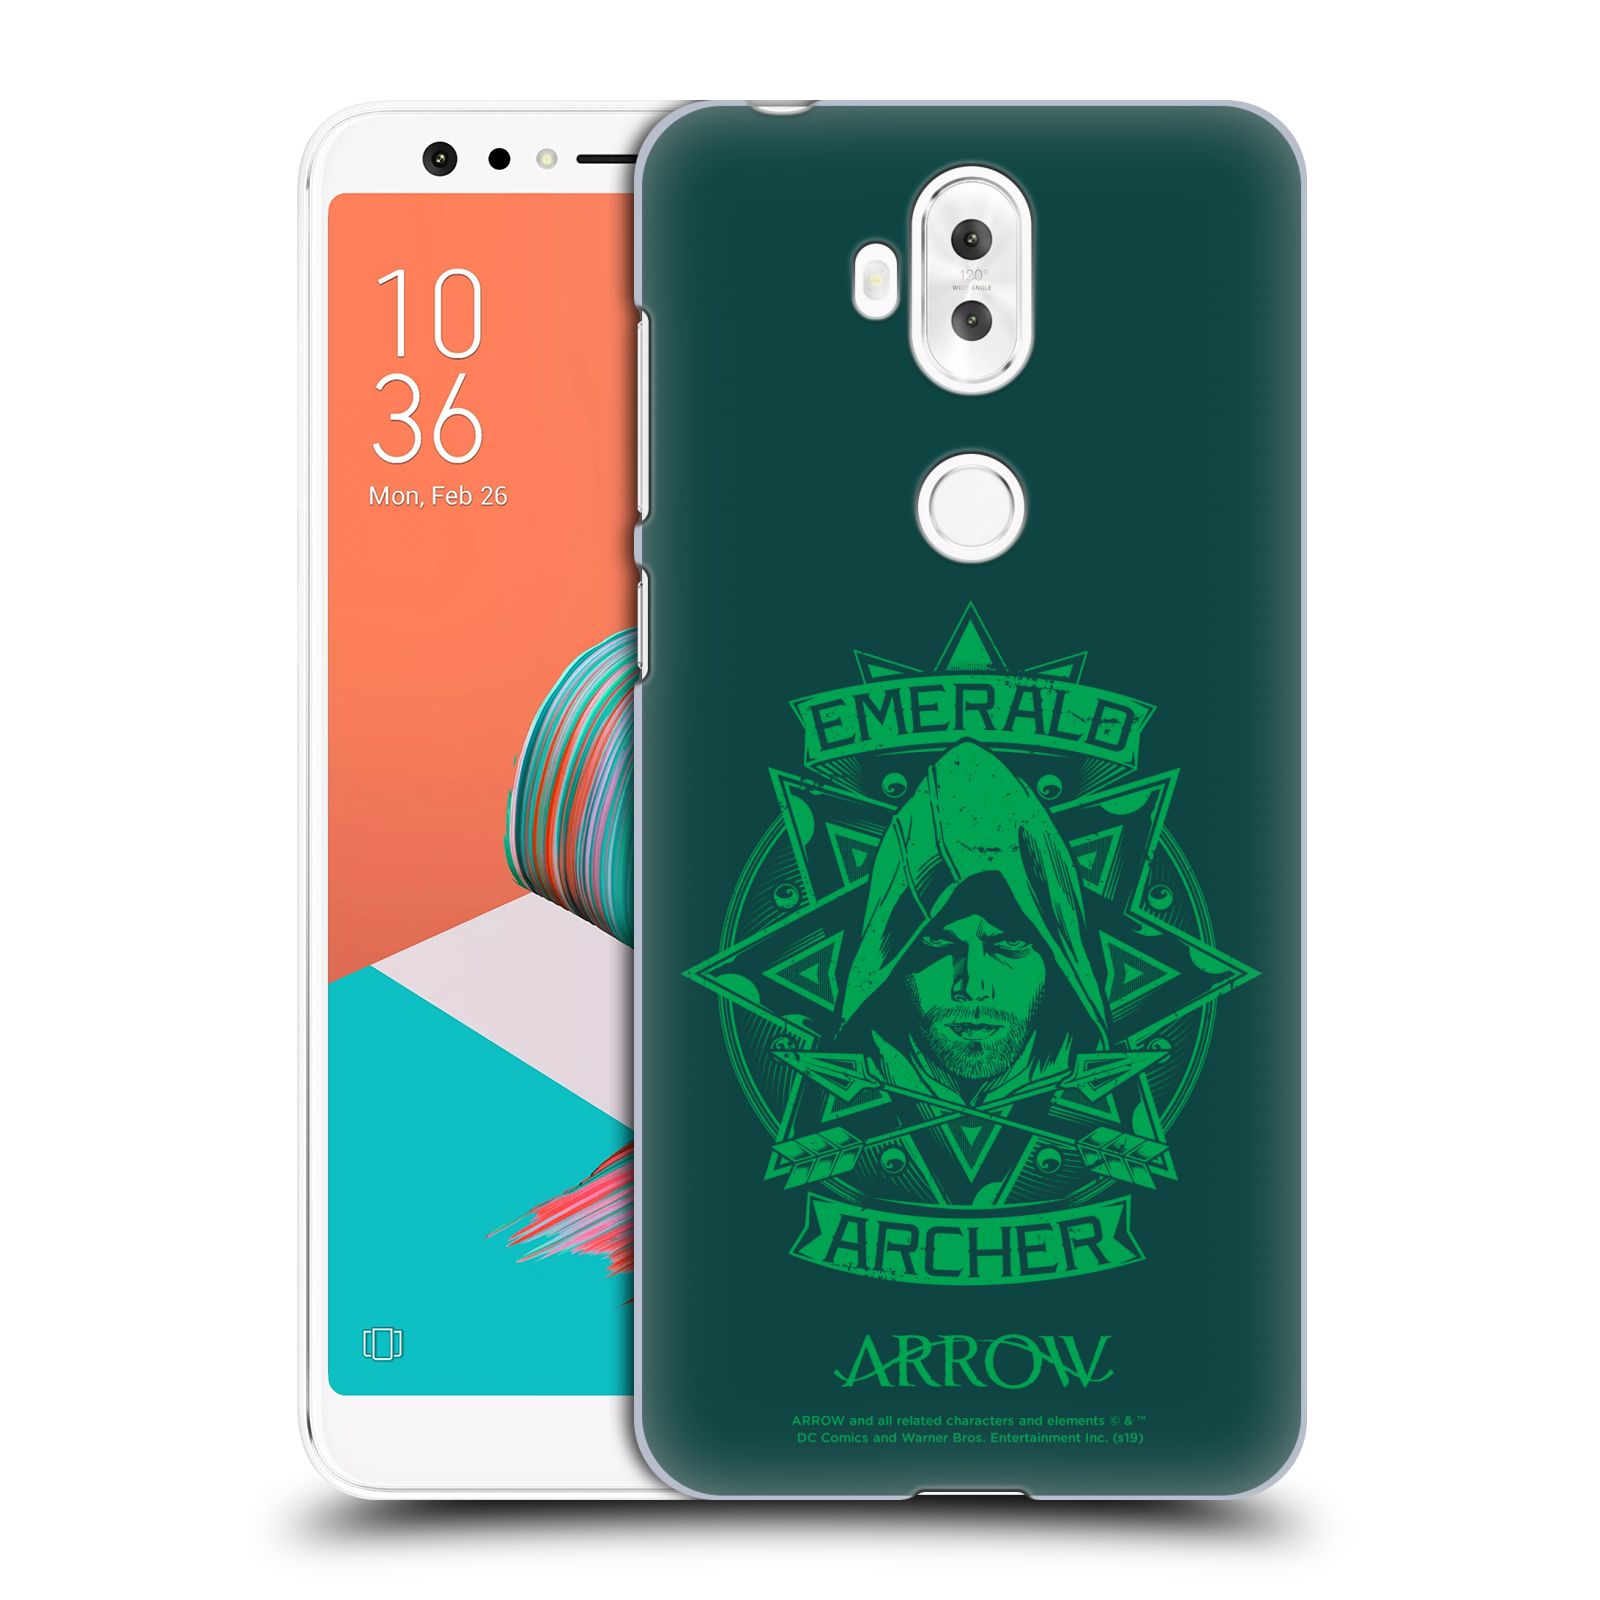 Zadní obal pro mobil Asus Zenfone 5 Lite ZC600KL - HEAD CASE - Arrow - Archer zelená kresba